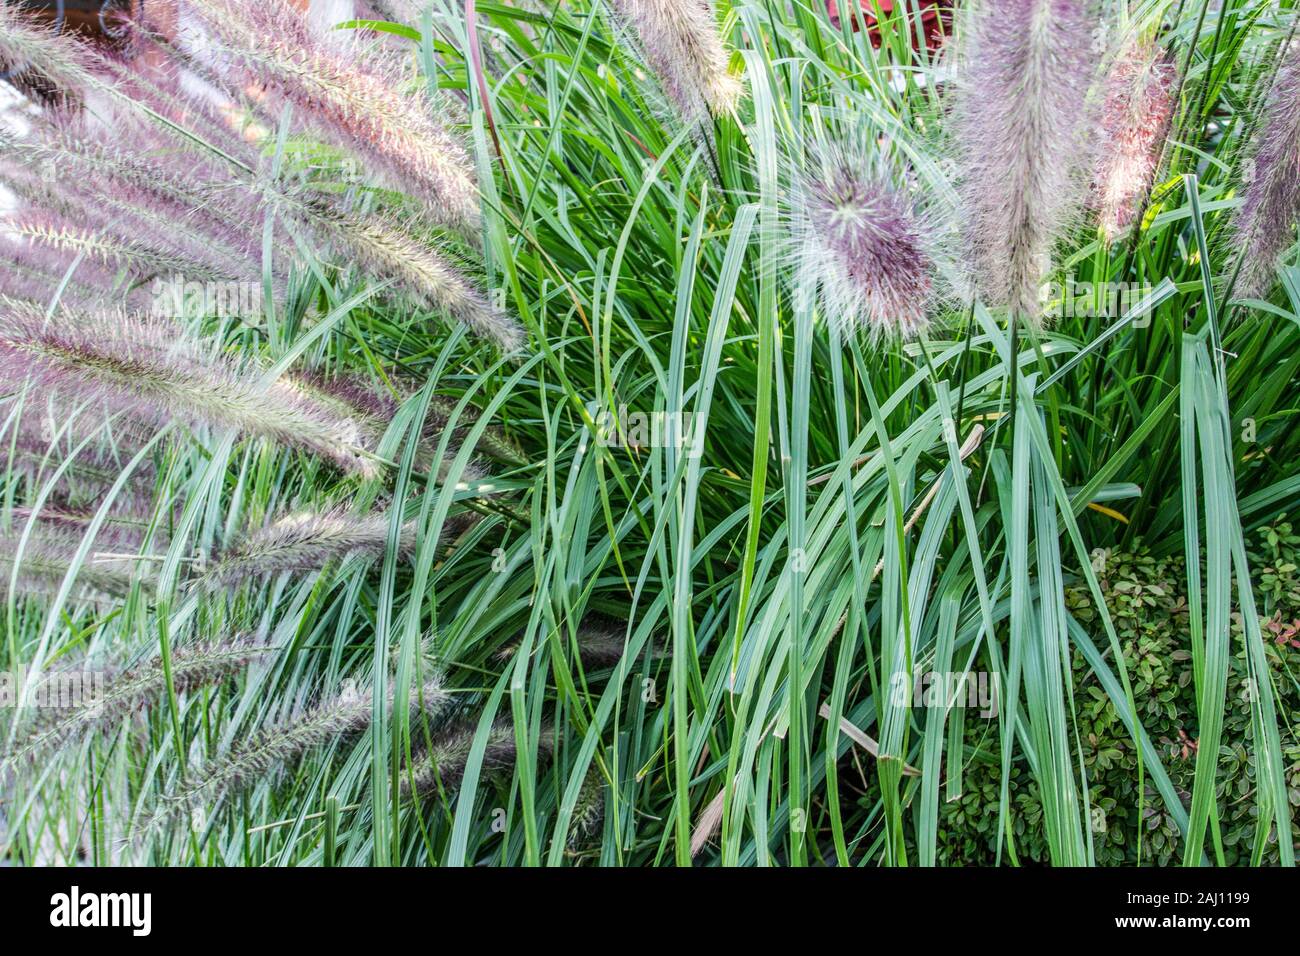 Graminées ornementales. Fountain grass est une herbe ornementale utilisée dans les cours pour l'aménagement paysager. Banque D'Images